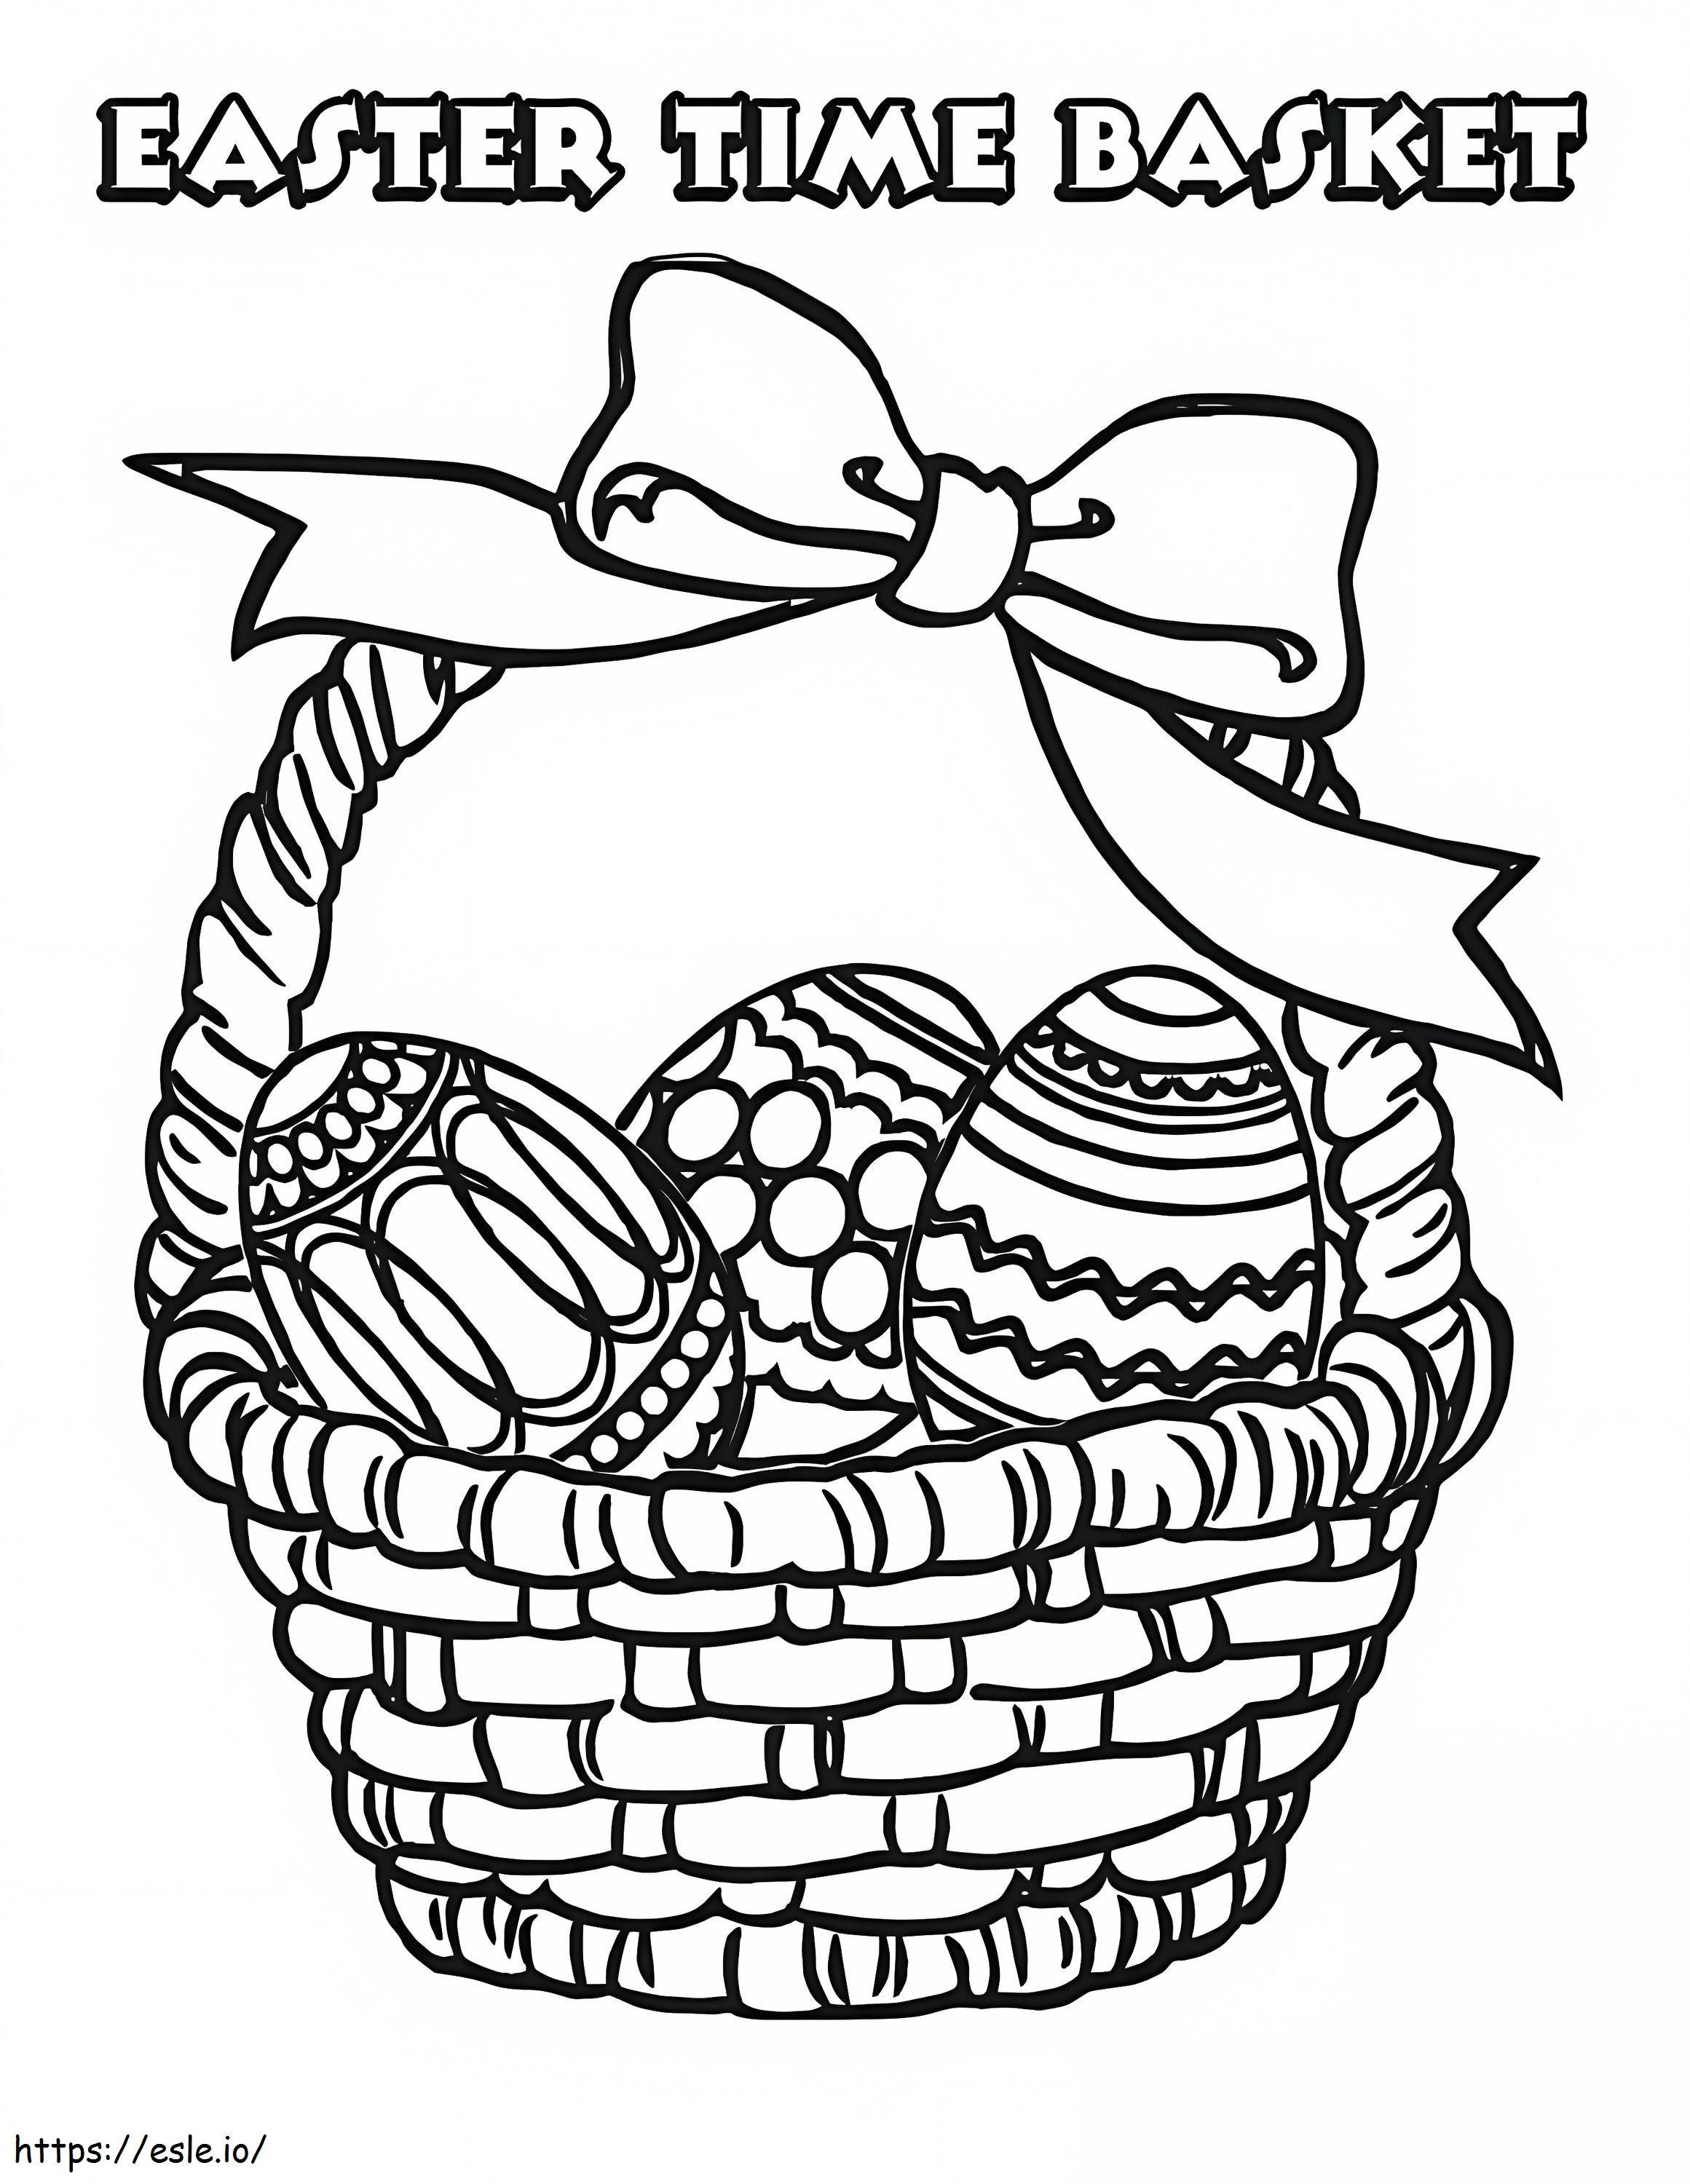 Koszyczek Wielkanocny 8 kolorowanka